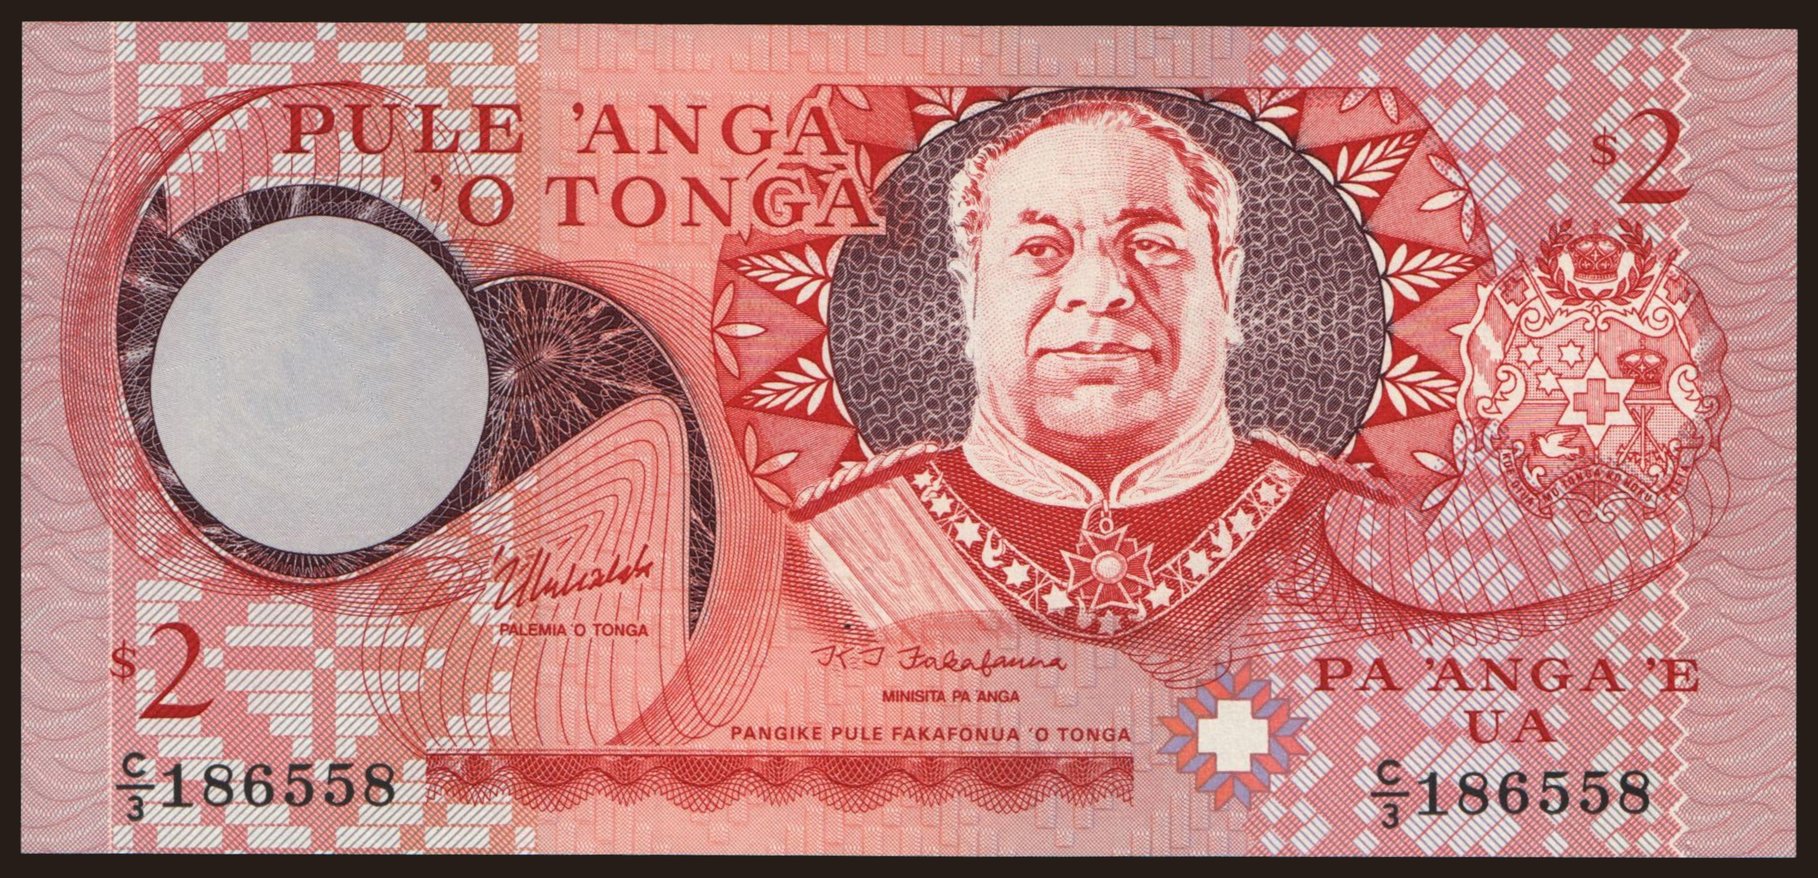 2 pa anga, 1995